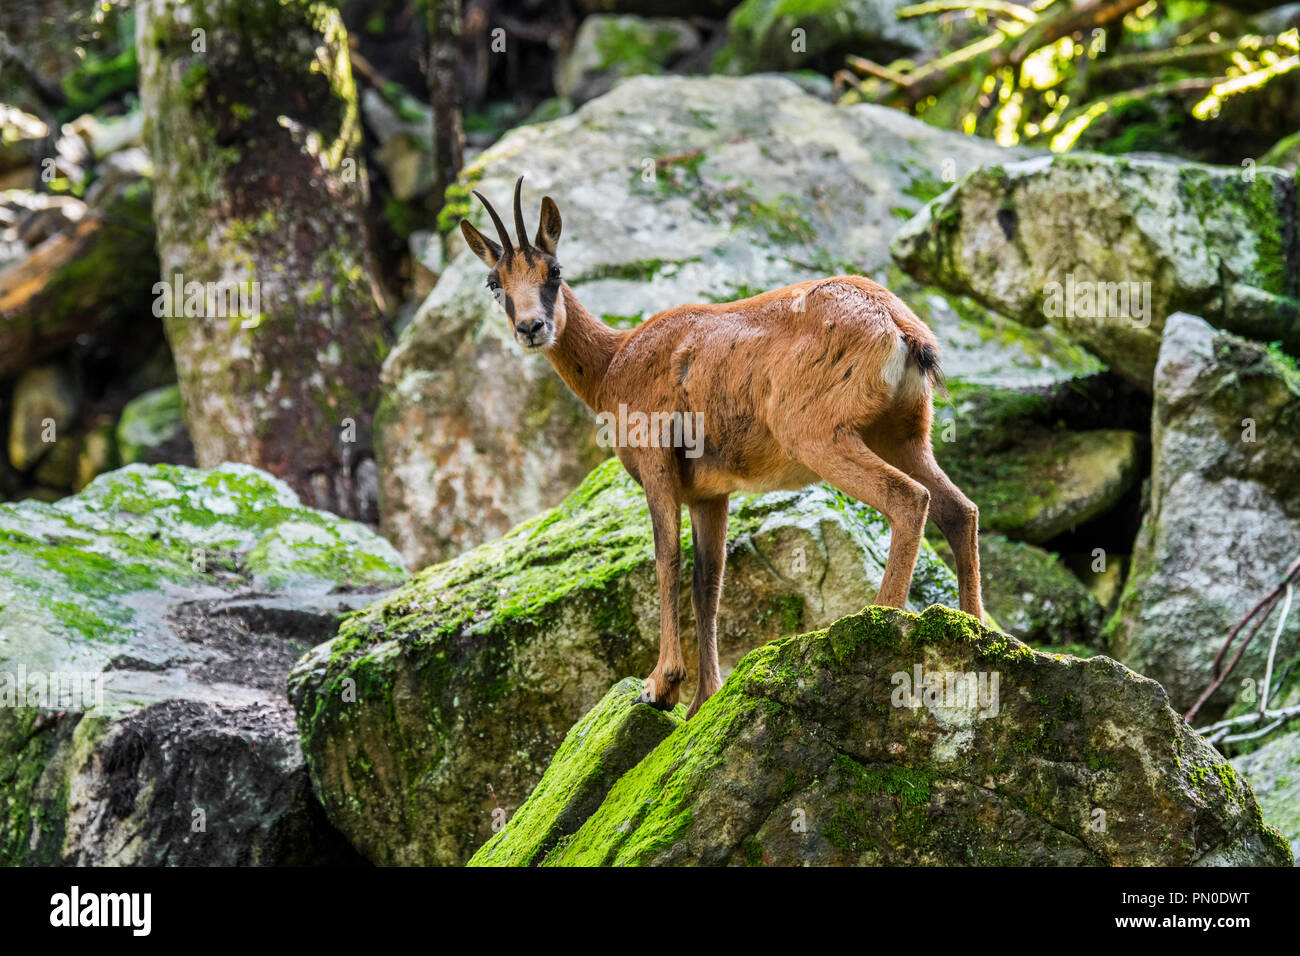 Rebeco pirenaico (Rupicapra pyrenaica) forrajeando entre las rocas en el bosque en la ladera de montaña en los Pirineos. Foto de stock